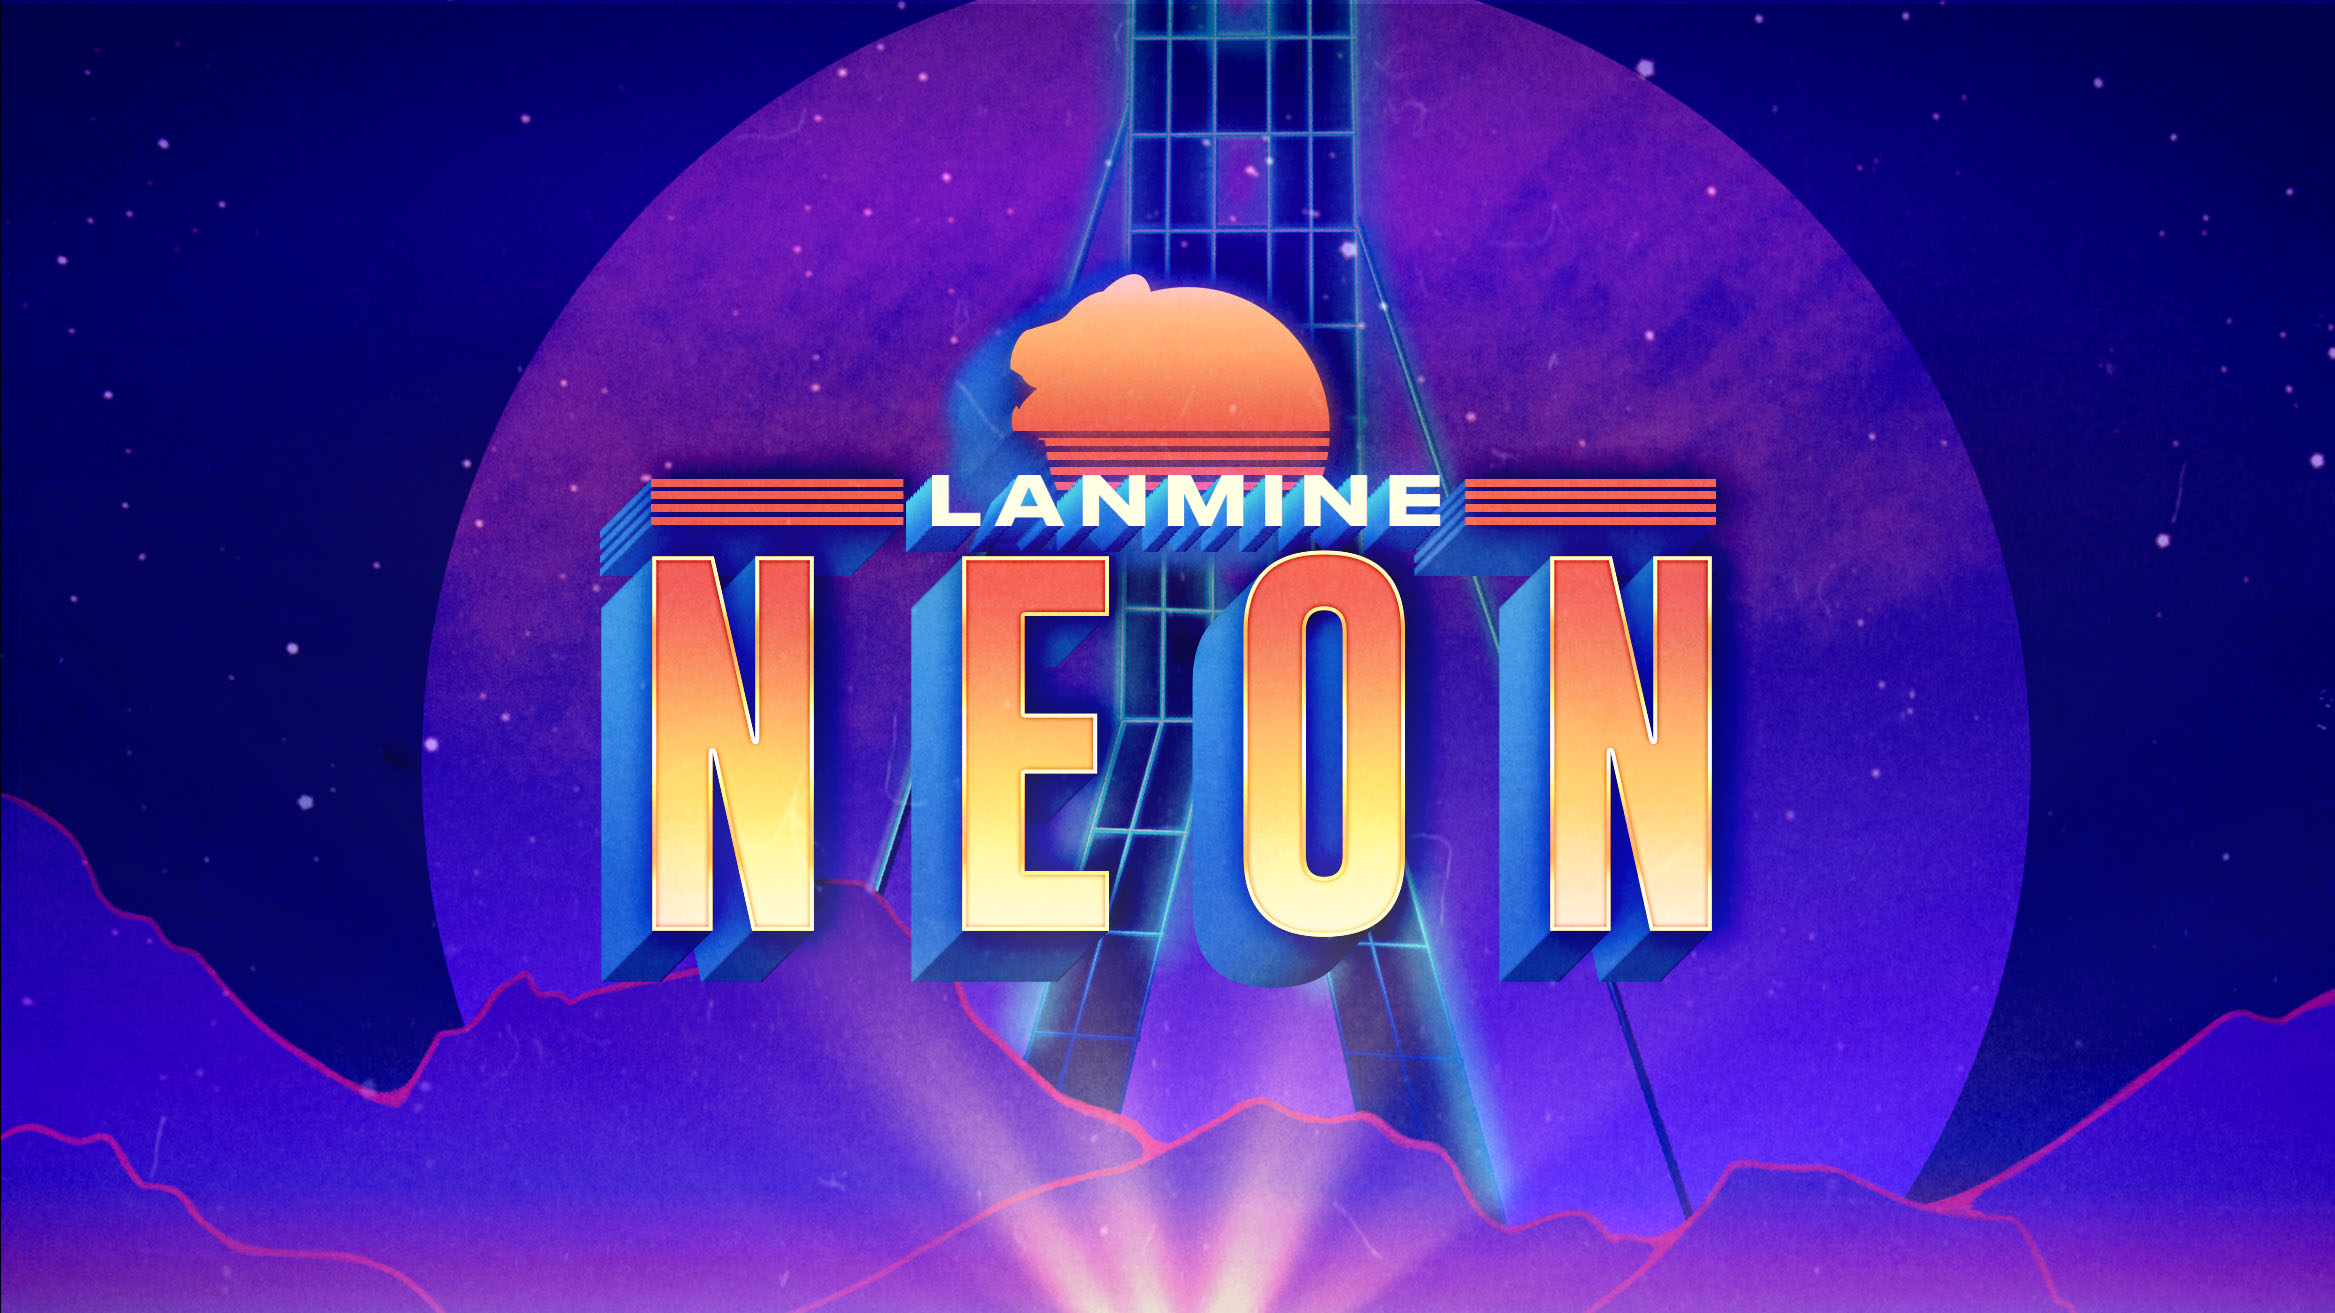 Offisielt banner for LANmine 32 Neon